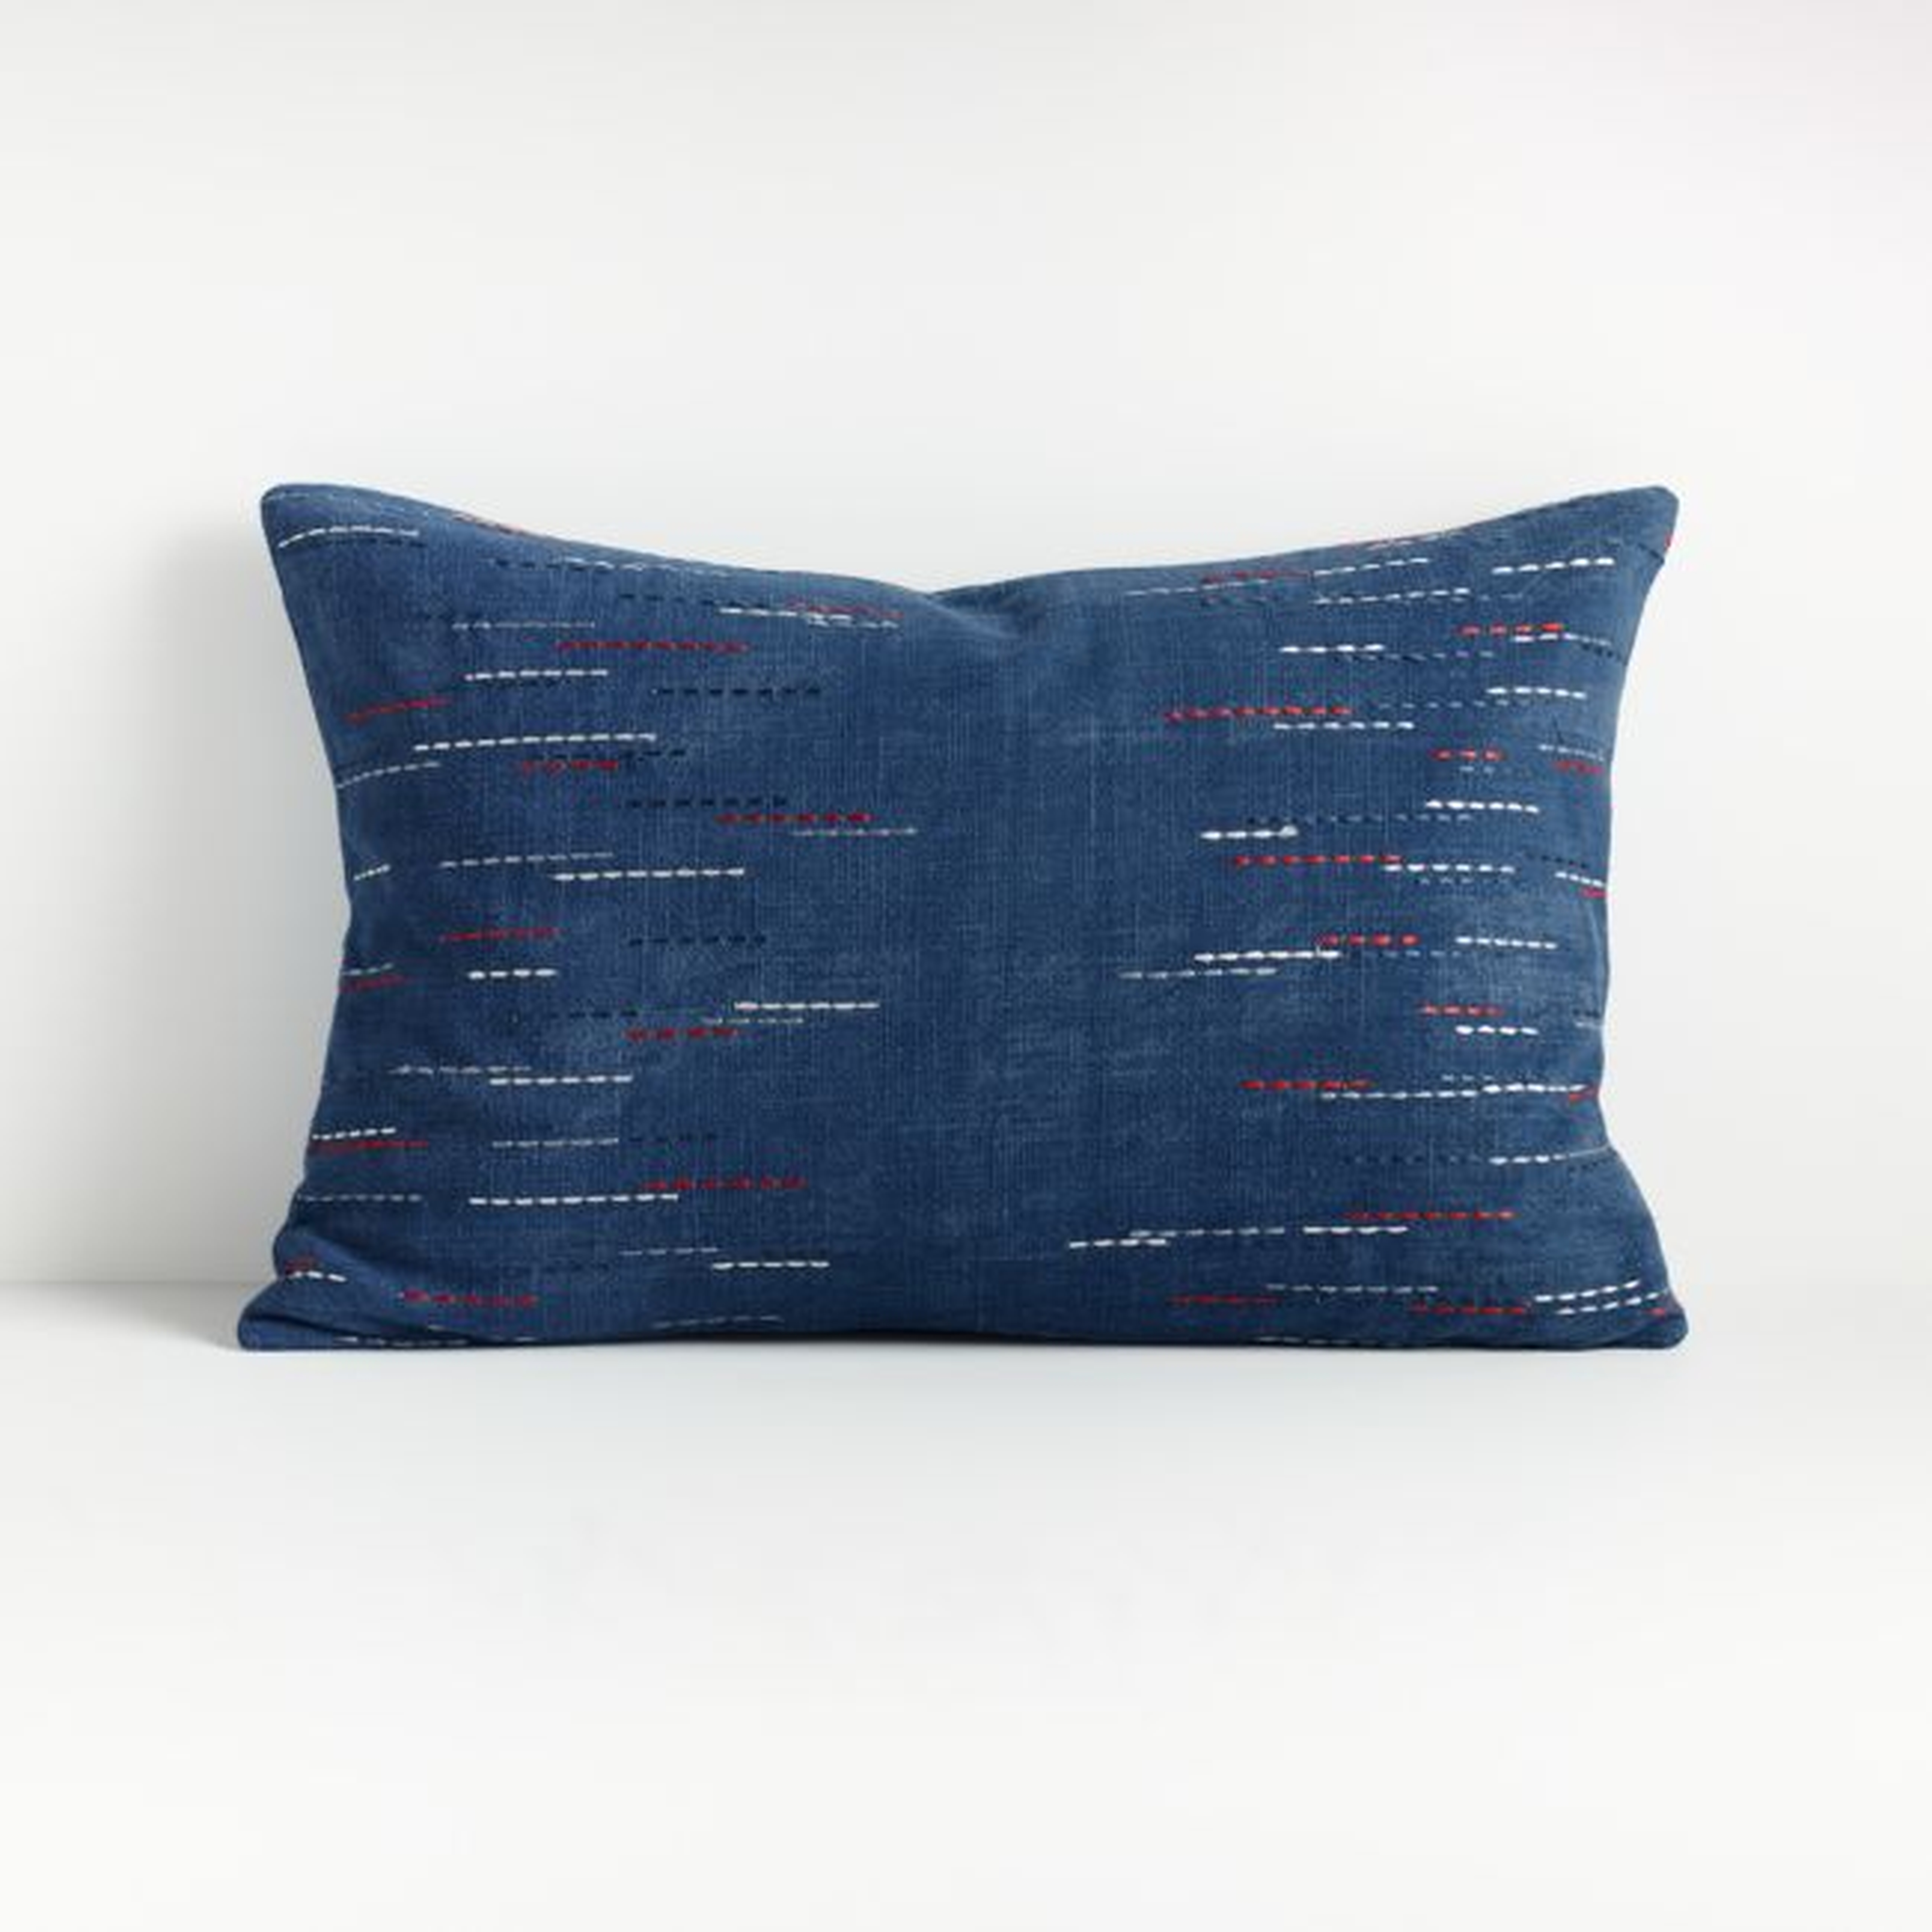 Hira Blue Lumbar Pillow 22"x15" - Crate and Barrel